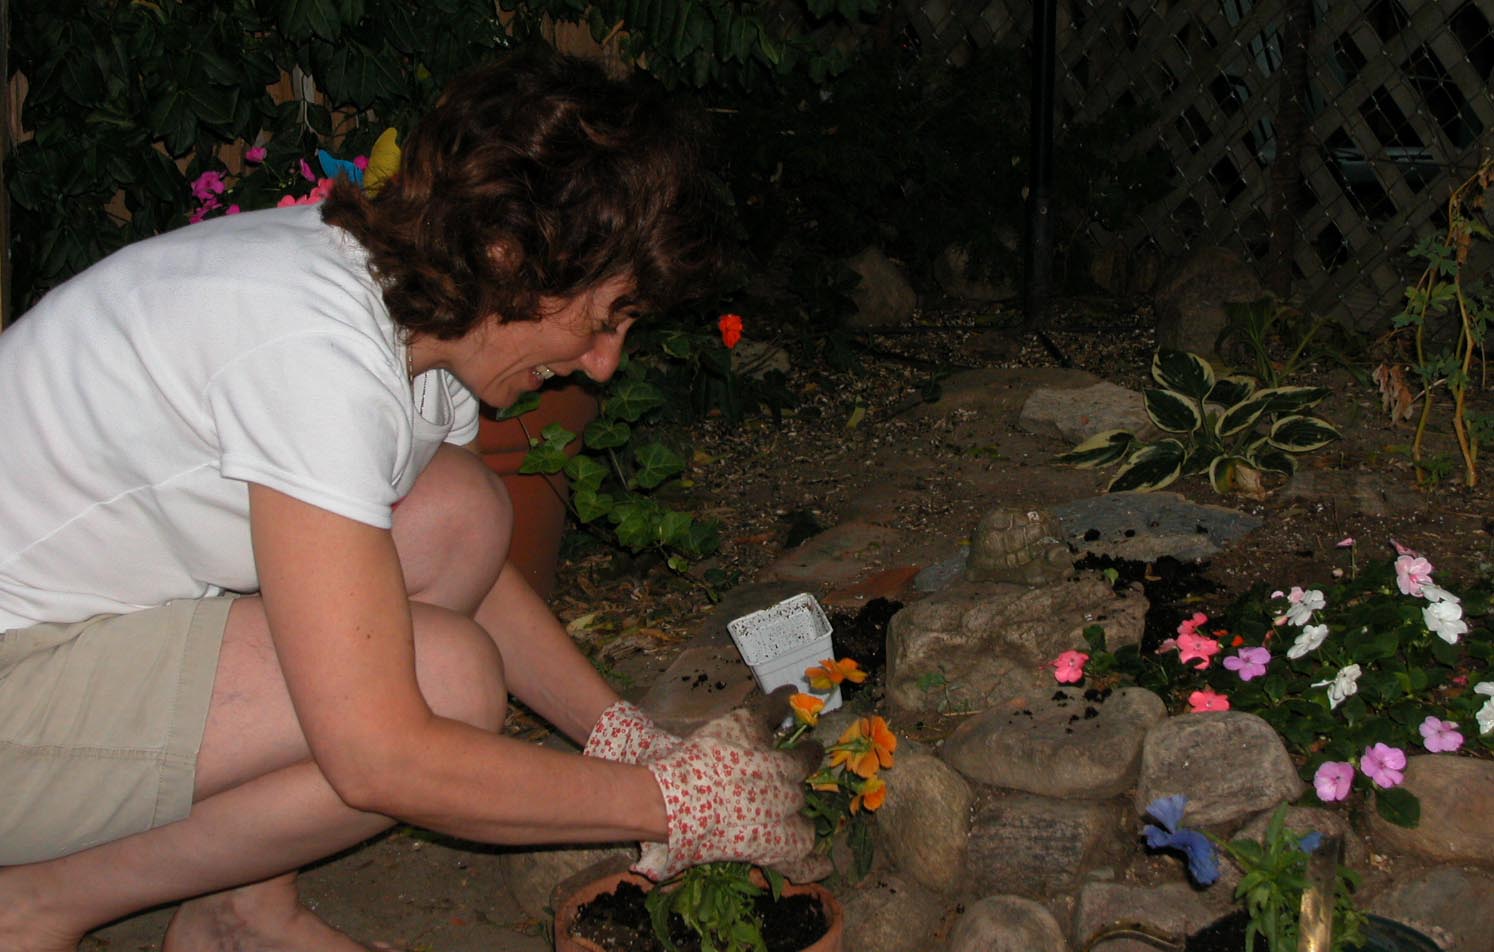 Miriam Garfinkle in garden Summer 2003. Photo by Ulli Diemer